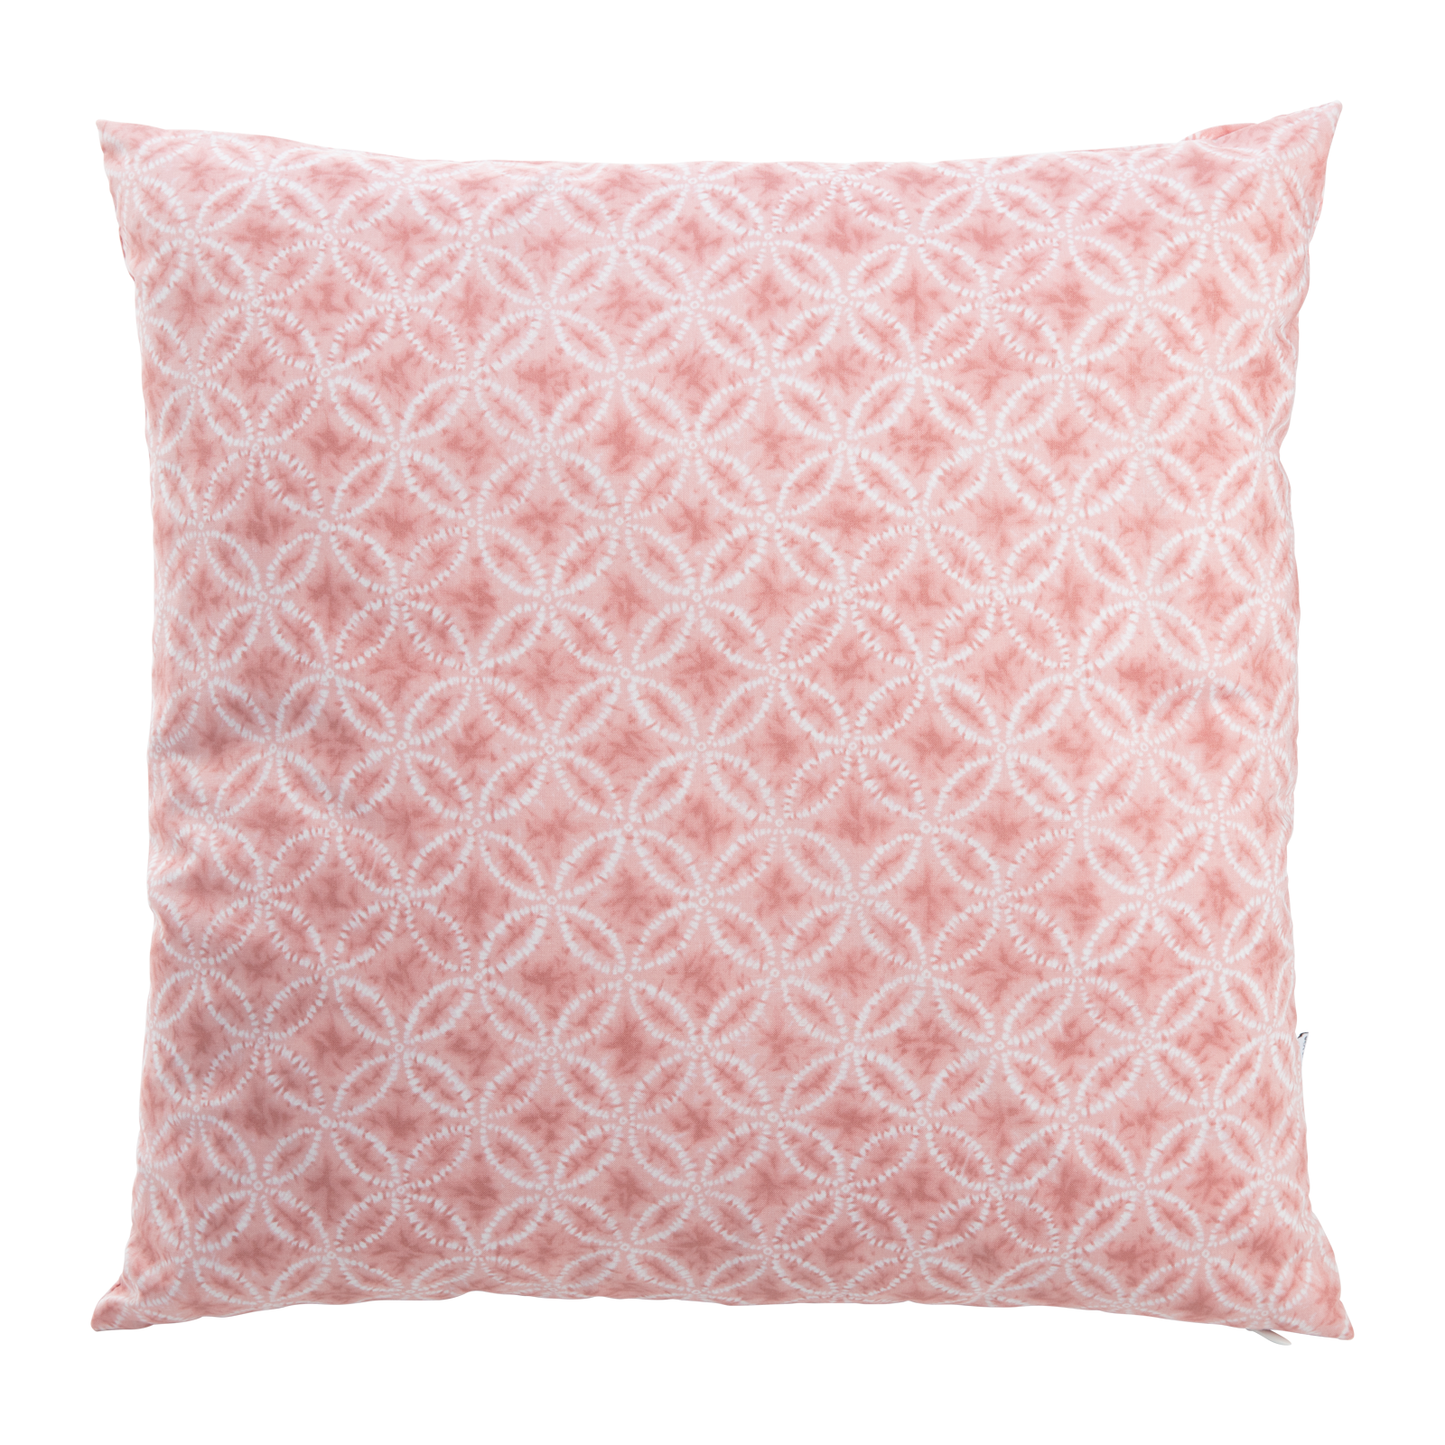 Taidai Pink Throw Pillow